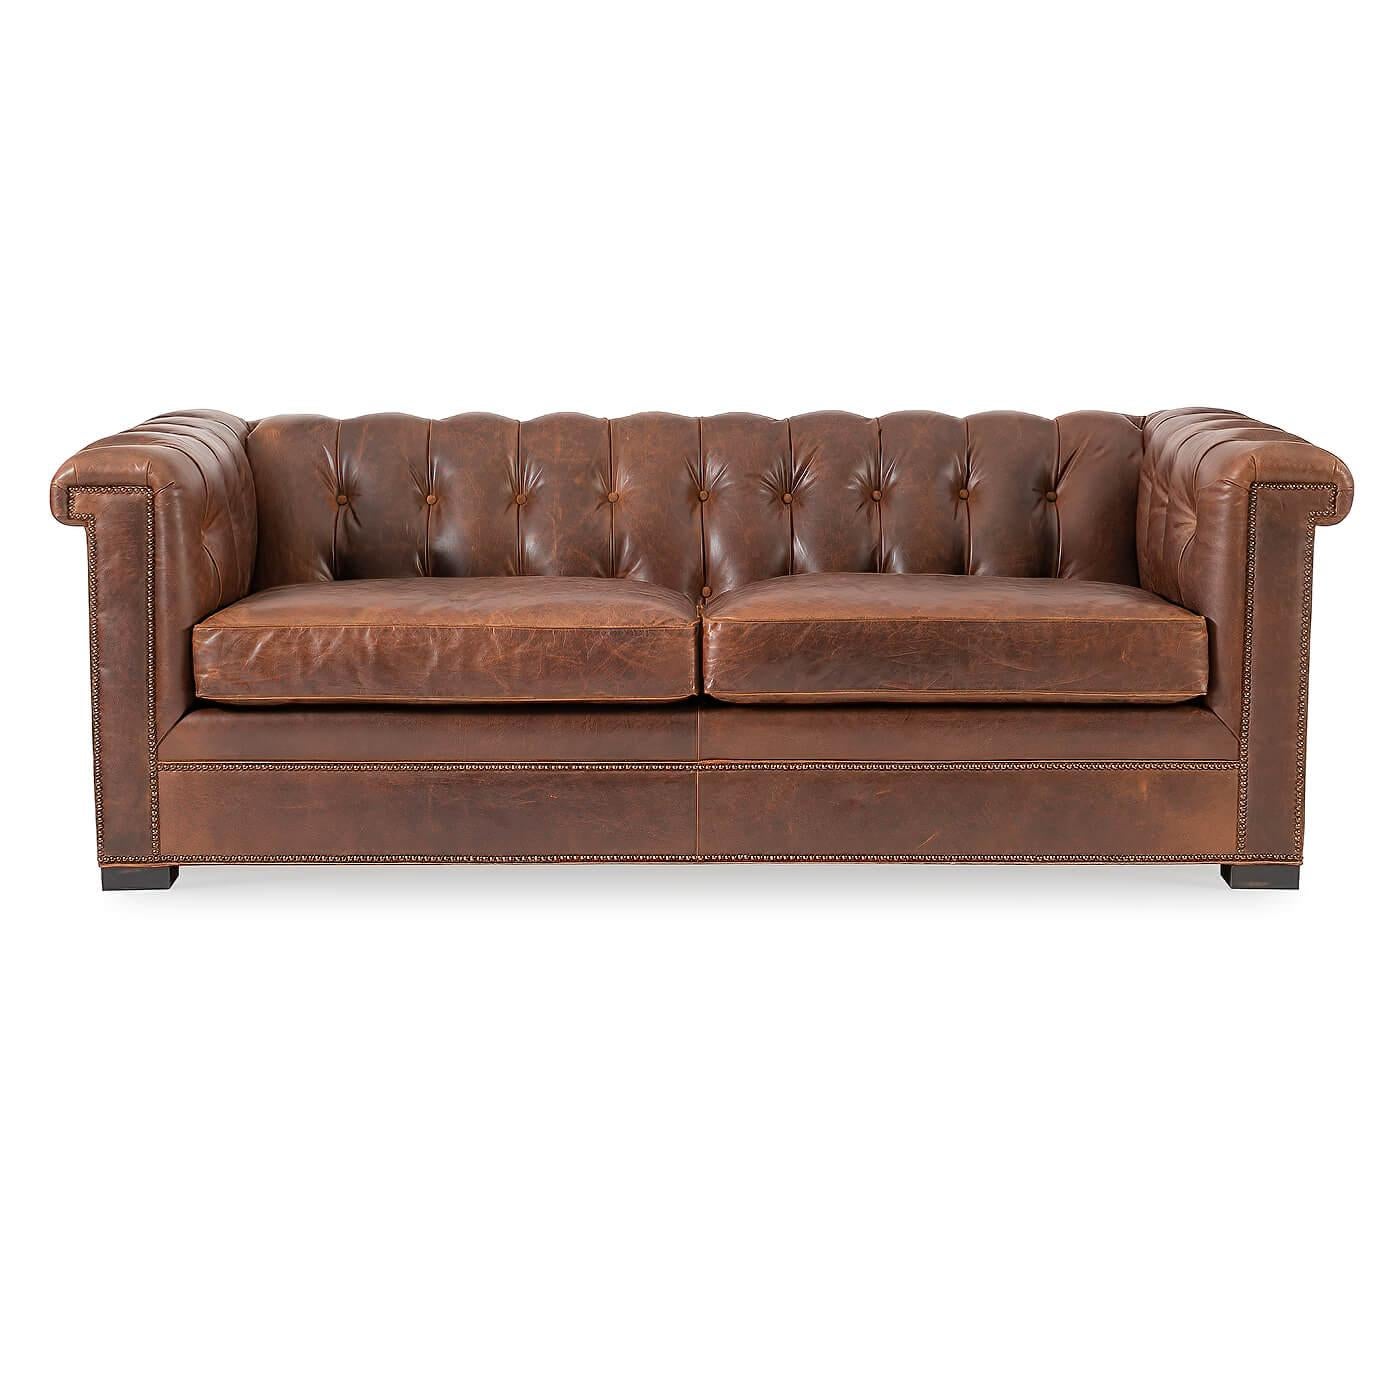 Un canapé Chesterfield moderne en cuir. Une interprétation du design anglais traditionnel du XIXe siècle avec des bras et un dossier carrés. 

Les accoudoirs et le dossier sont garnis de deux coussins d'assise en duvet. Fini avec des détails de